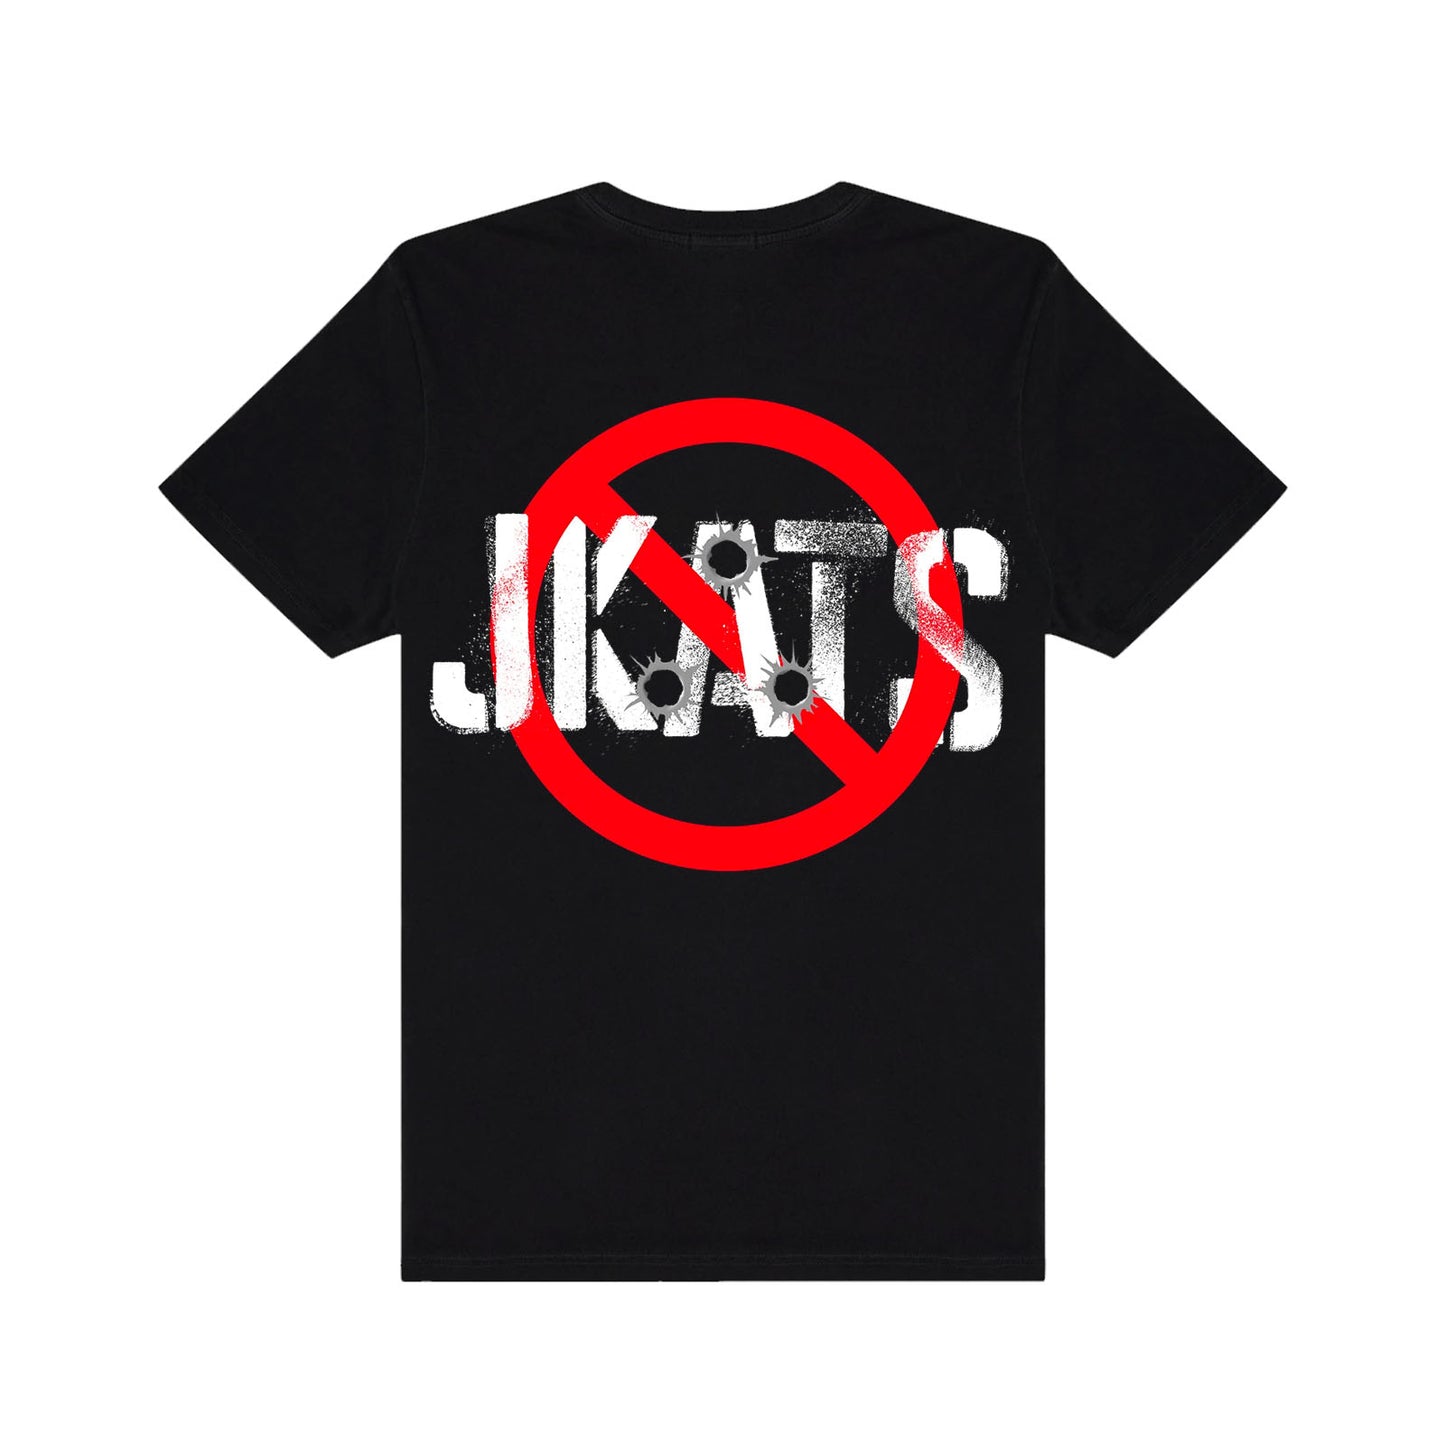 "NO JKATS" Black T-Shirt